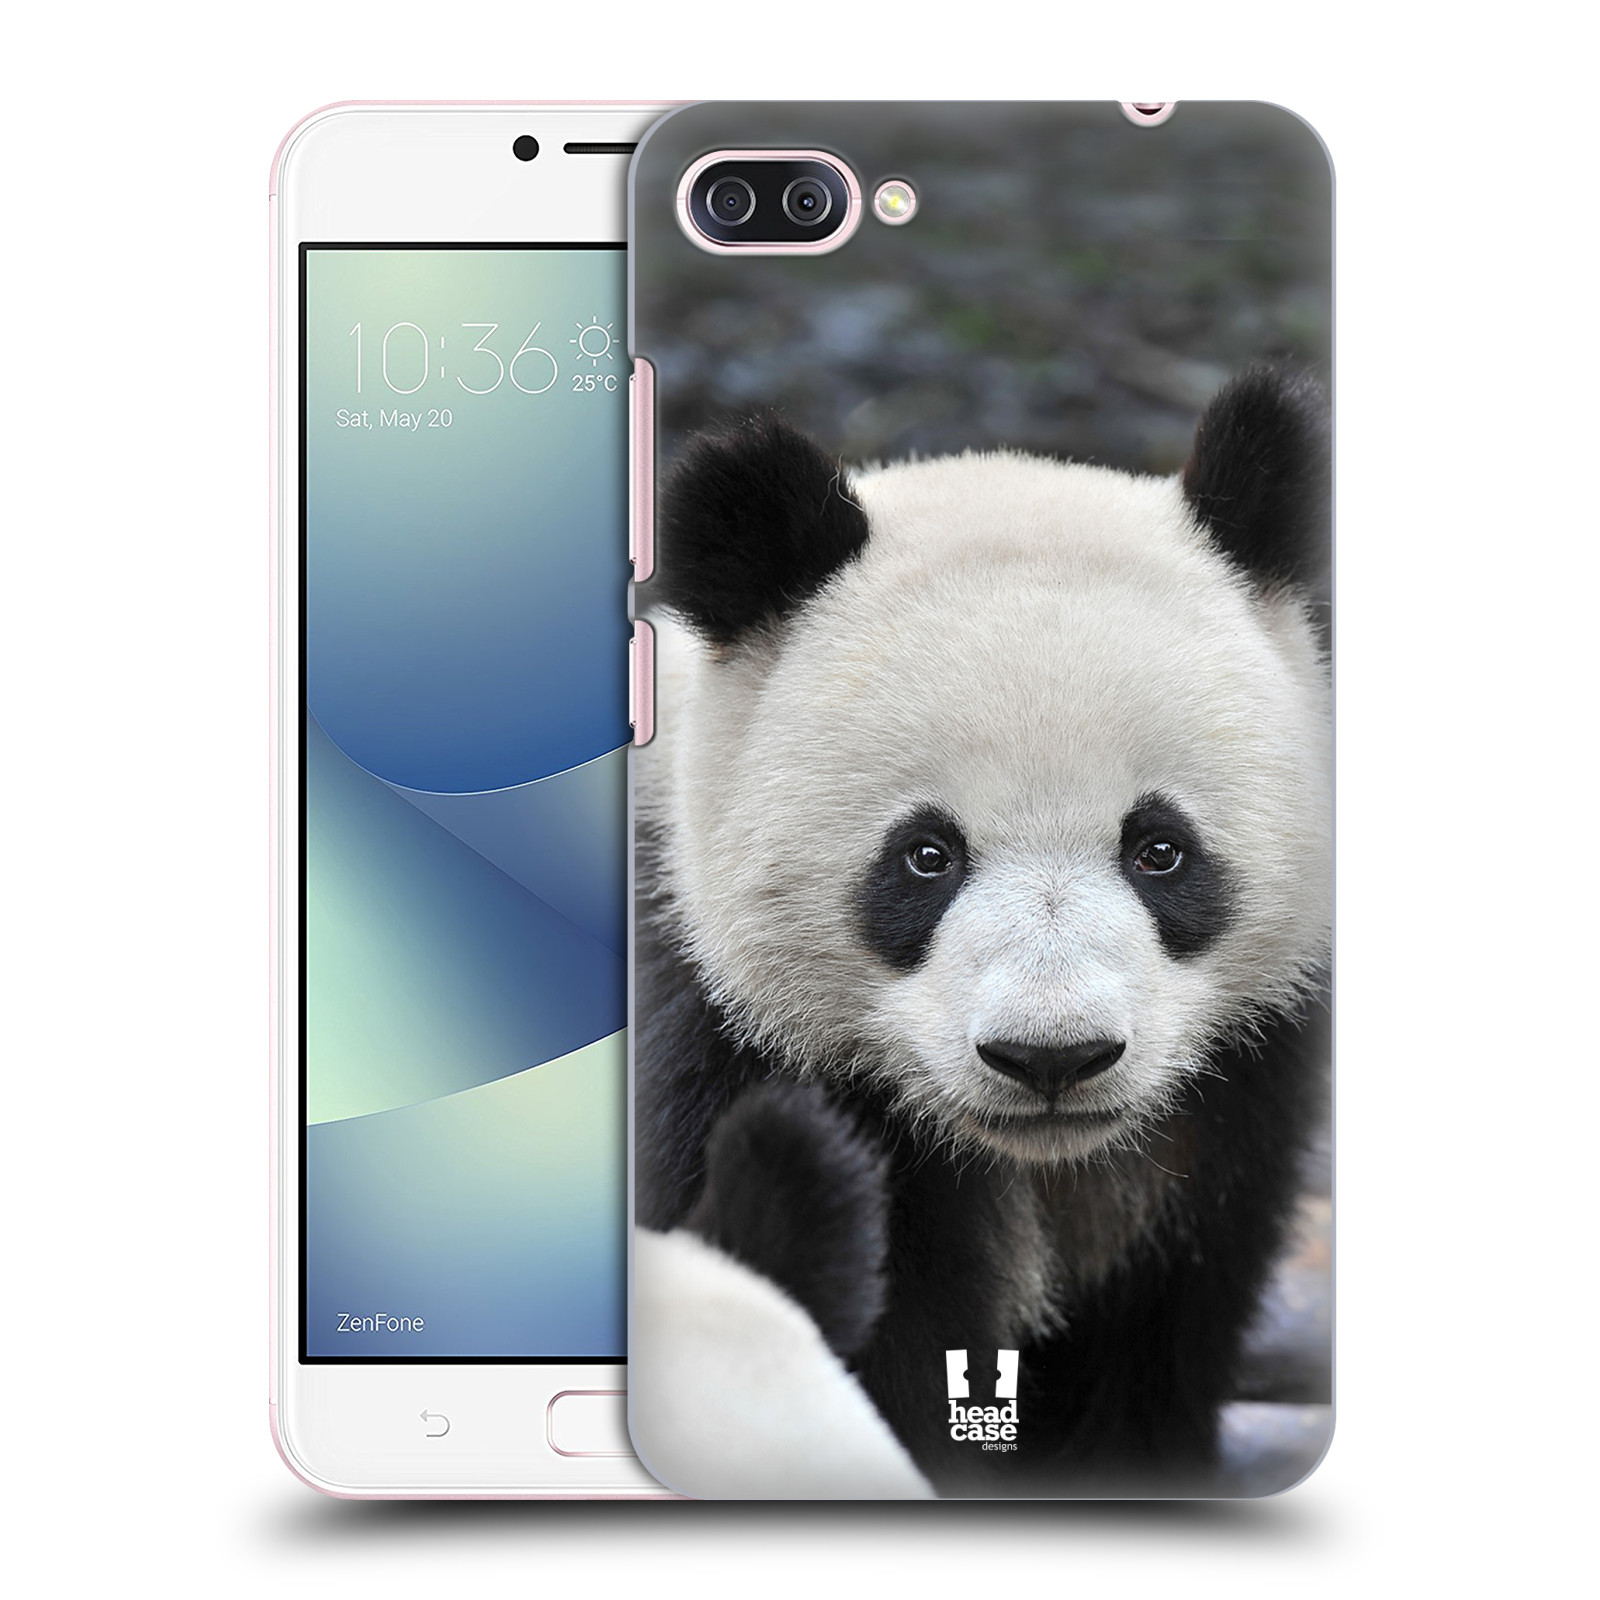 Zadní obal pro mobil Asus Zenfone 4 MAX / 4 MAX PRO (ZC554KL) - HEAD CASE - Svět zvířat medvěd panda